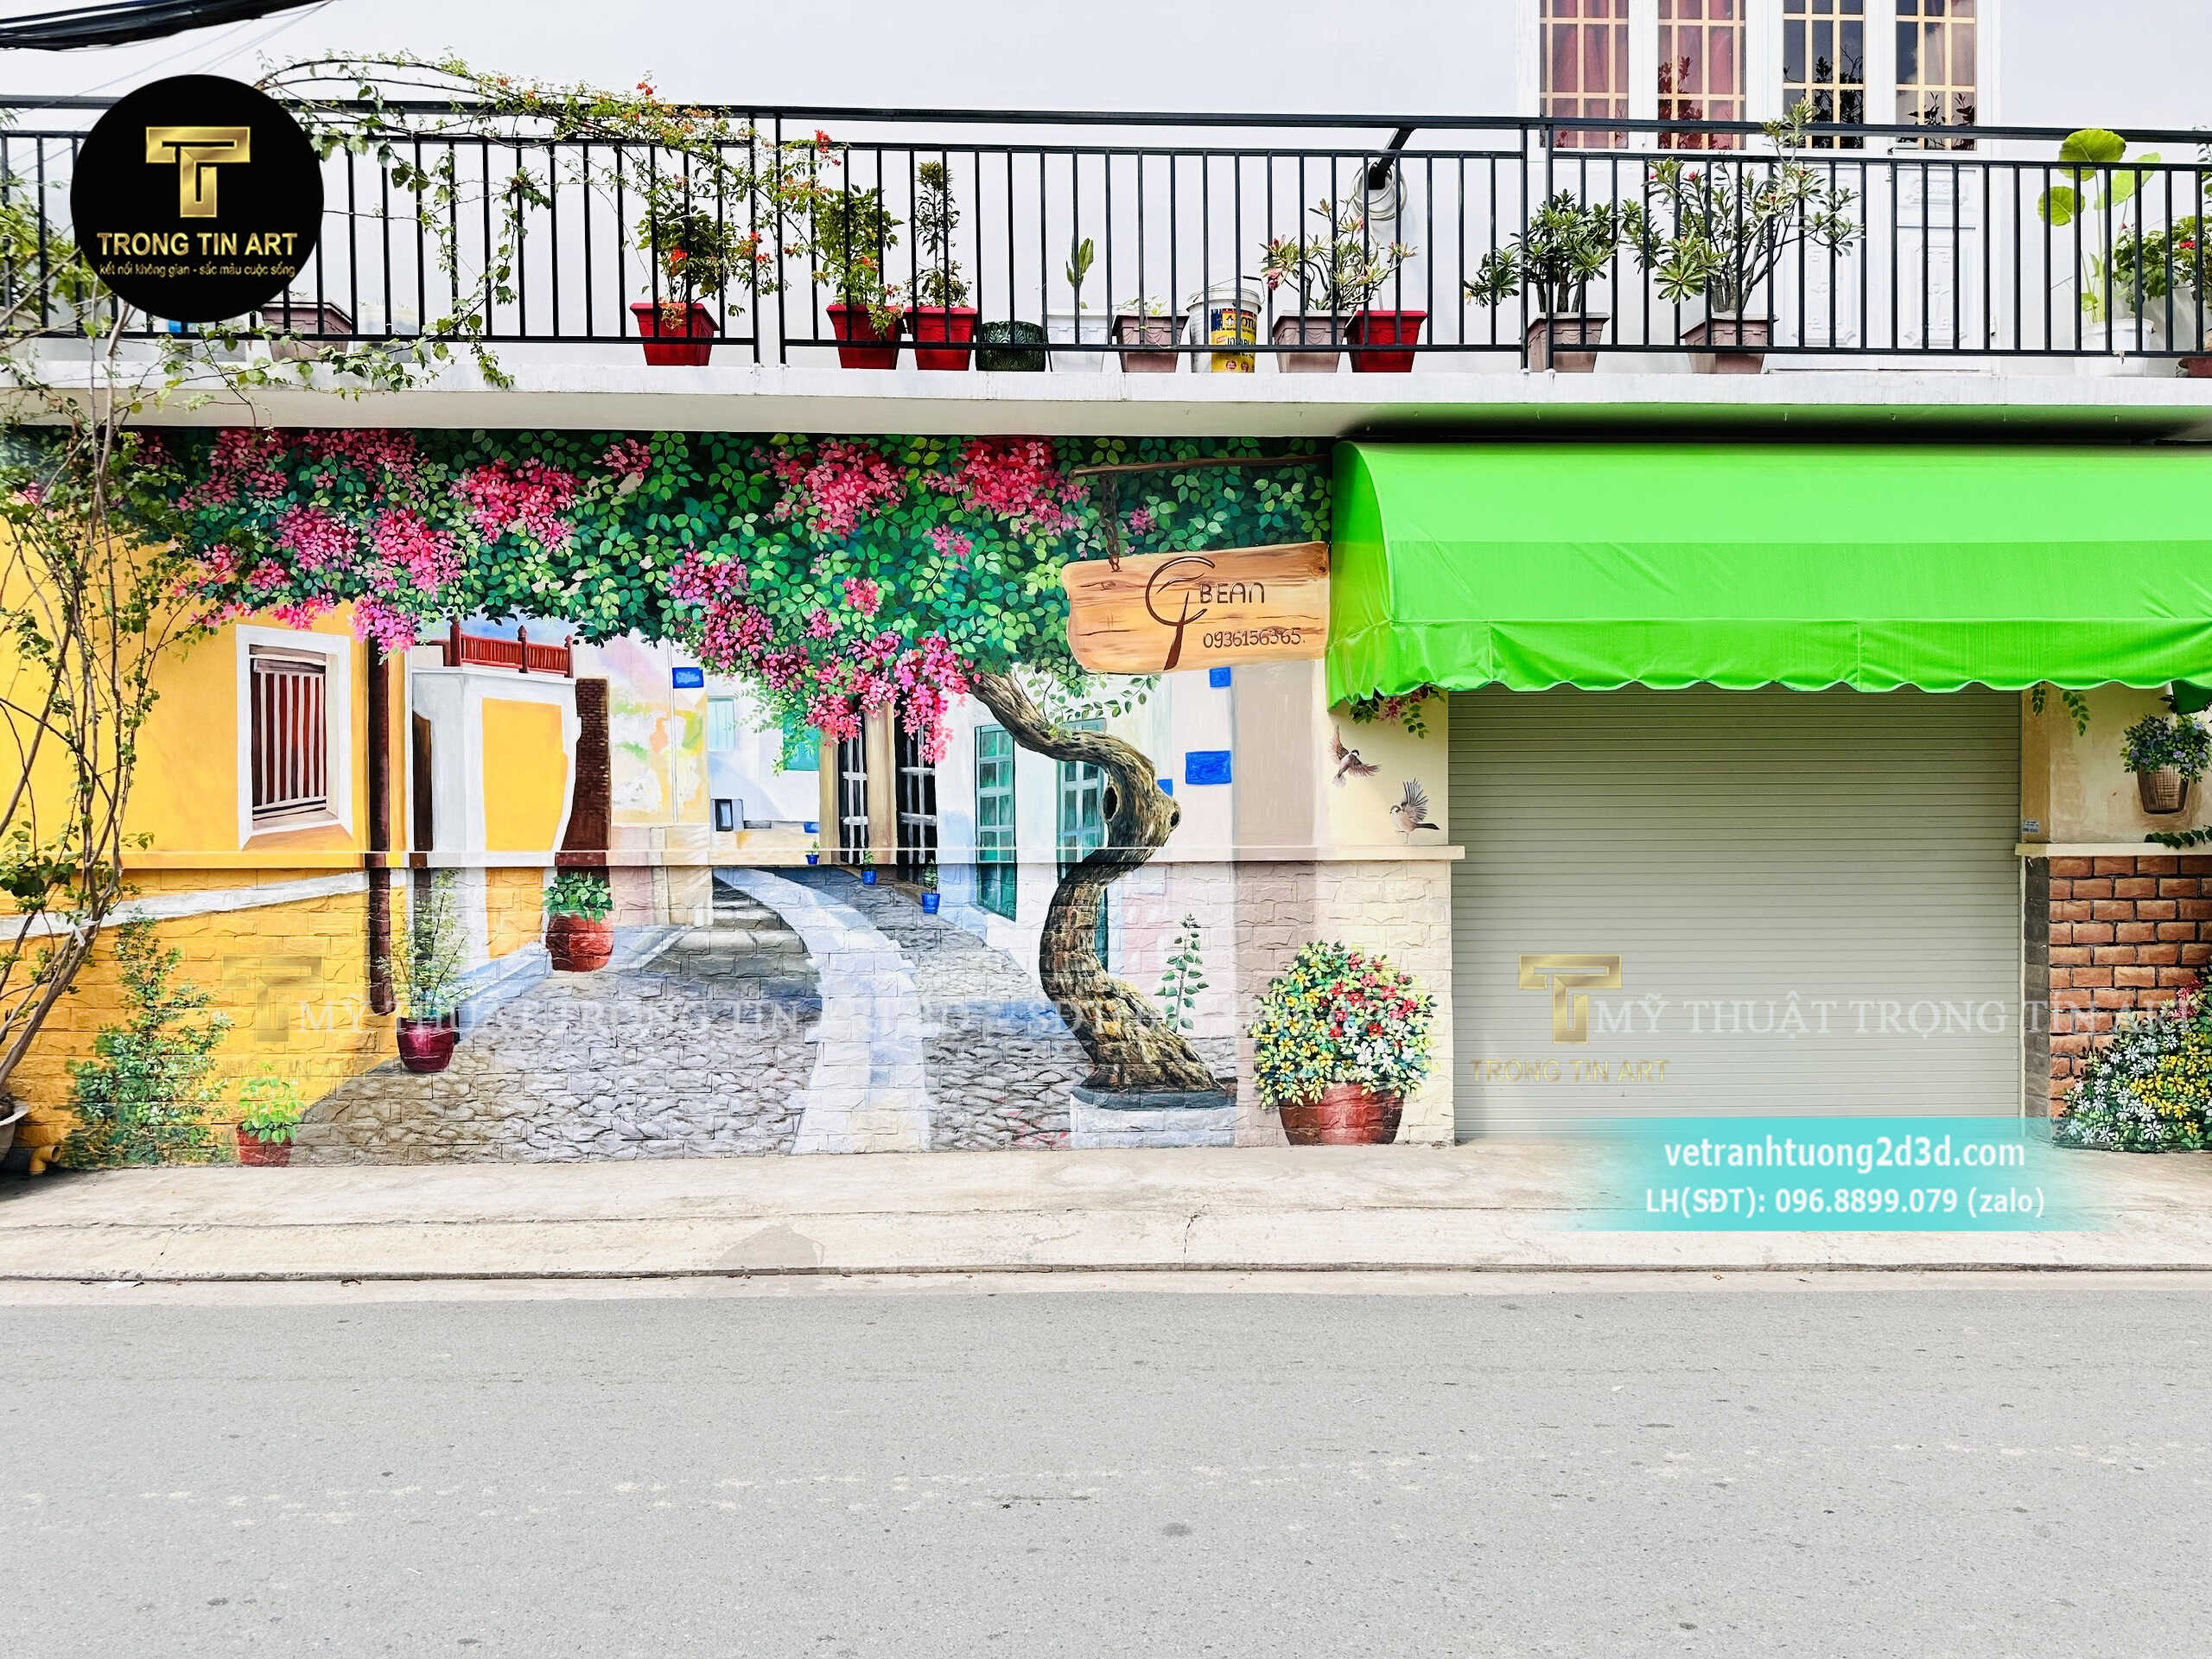 Vẽ tranh quán cafe phố cổ hoa giấy,tranh hoa giấy,tranh tường quán cafe,tranh tường phố cổ hội an,tranh tường quán cà phê,tranh quán coffee